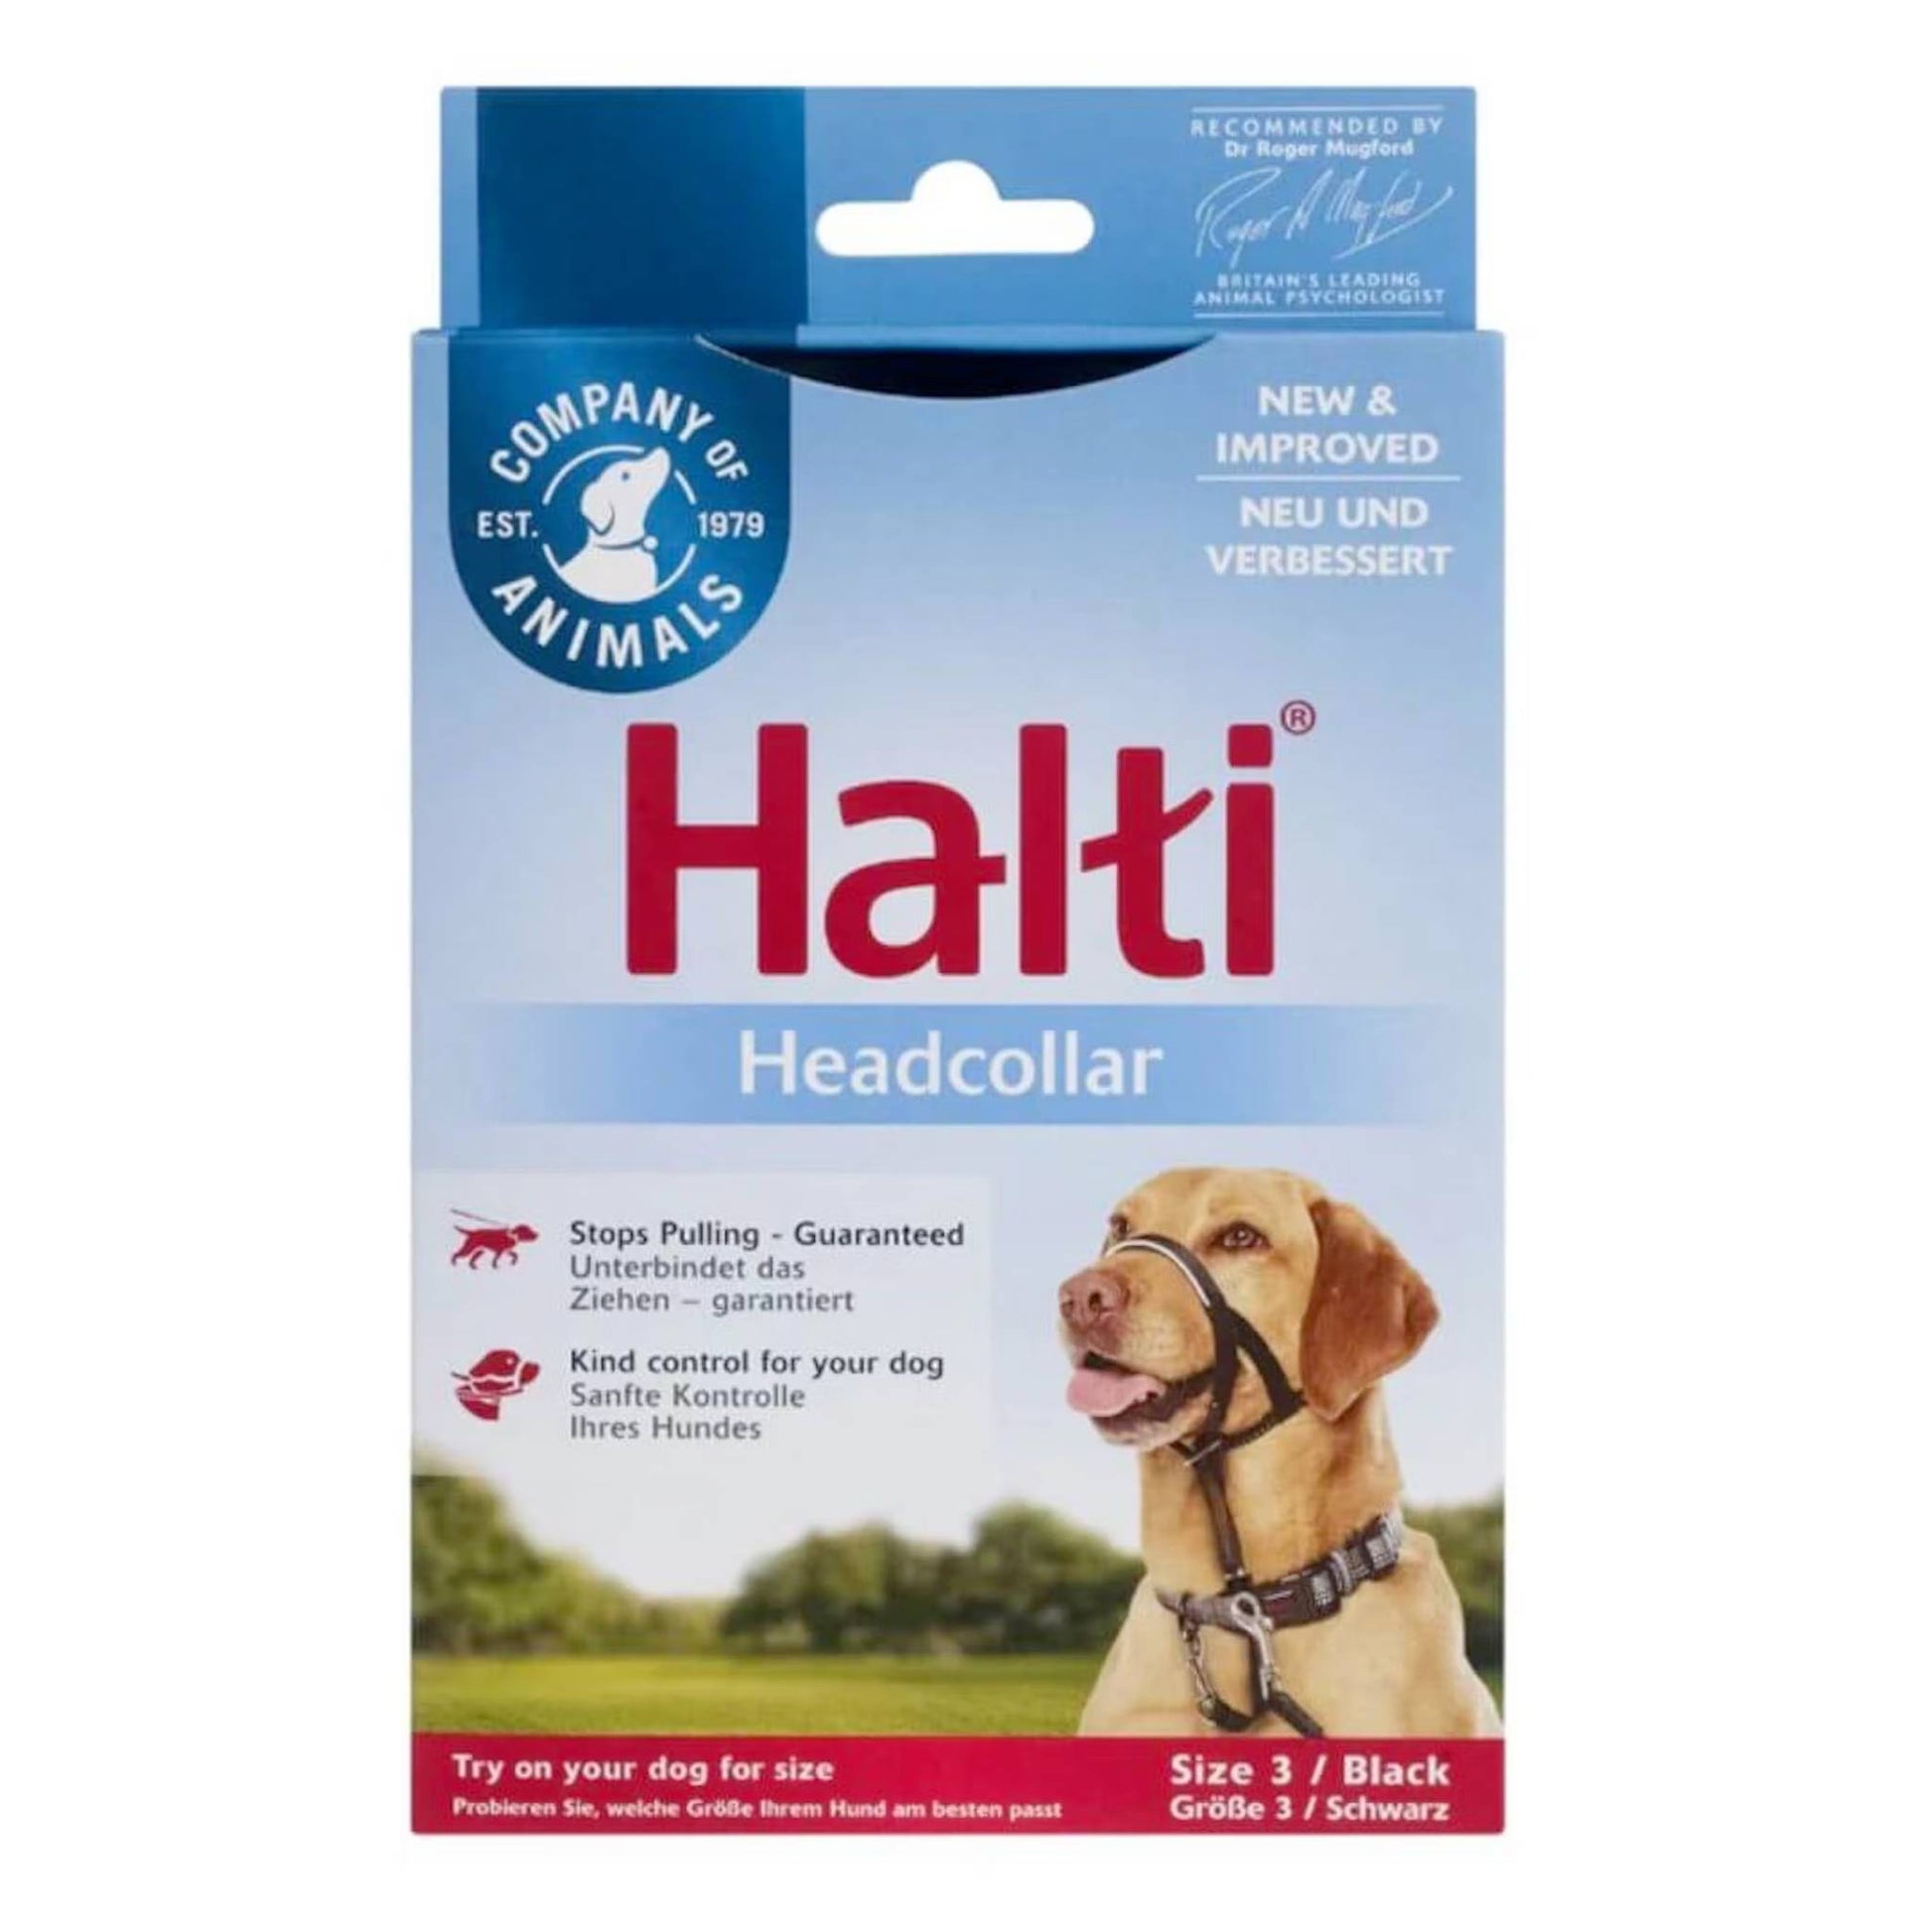 Halti headcollar for dogs size 3